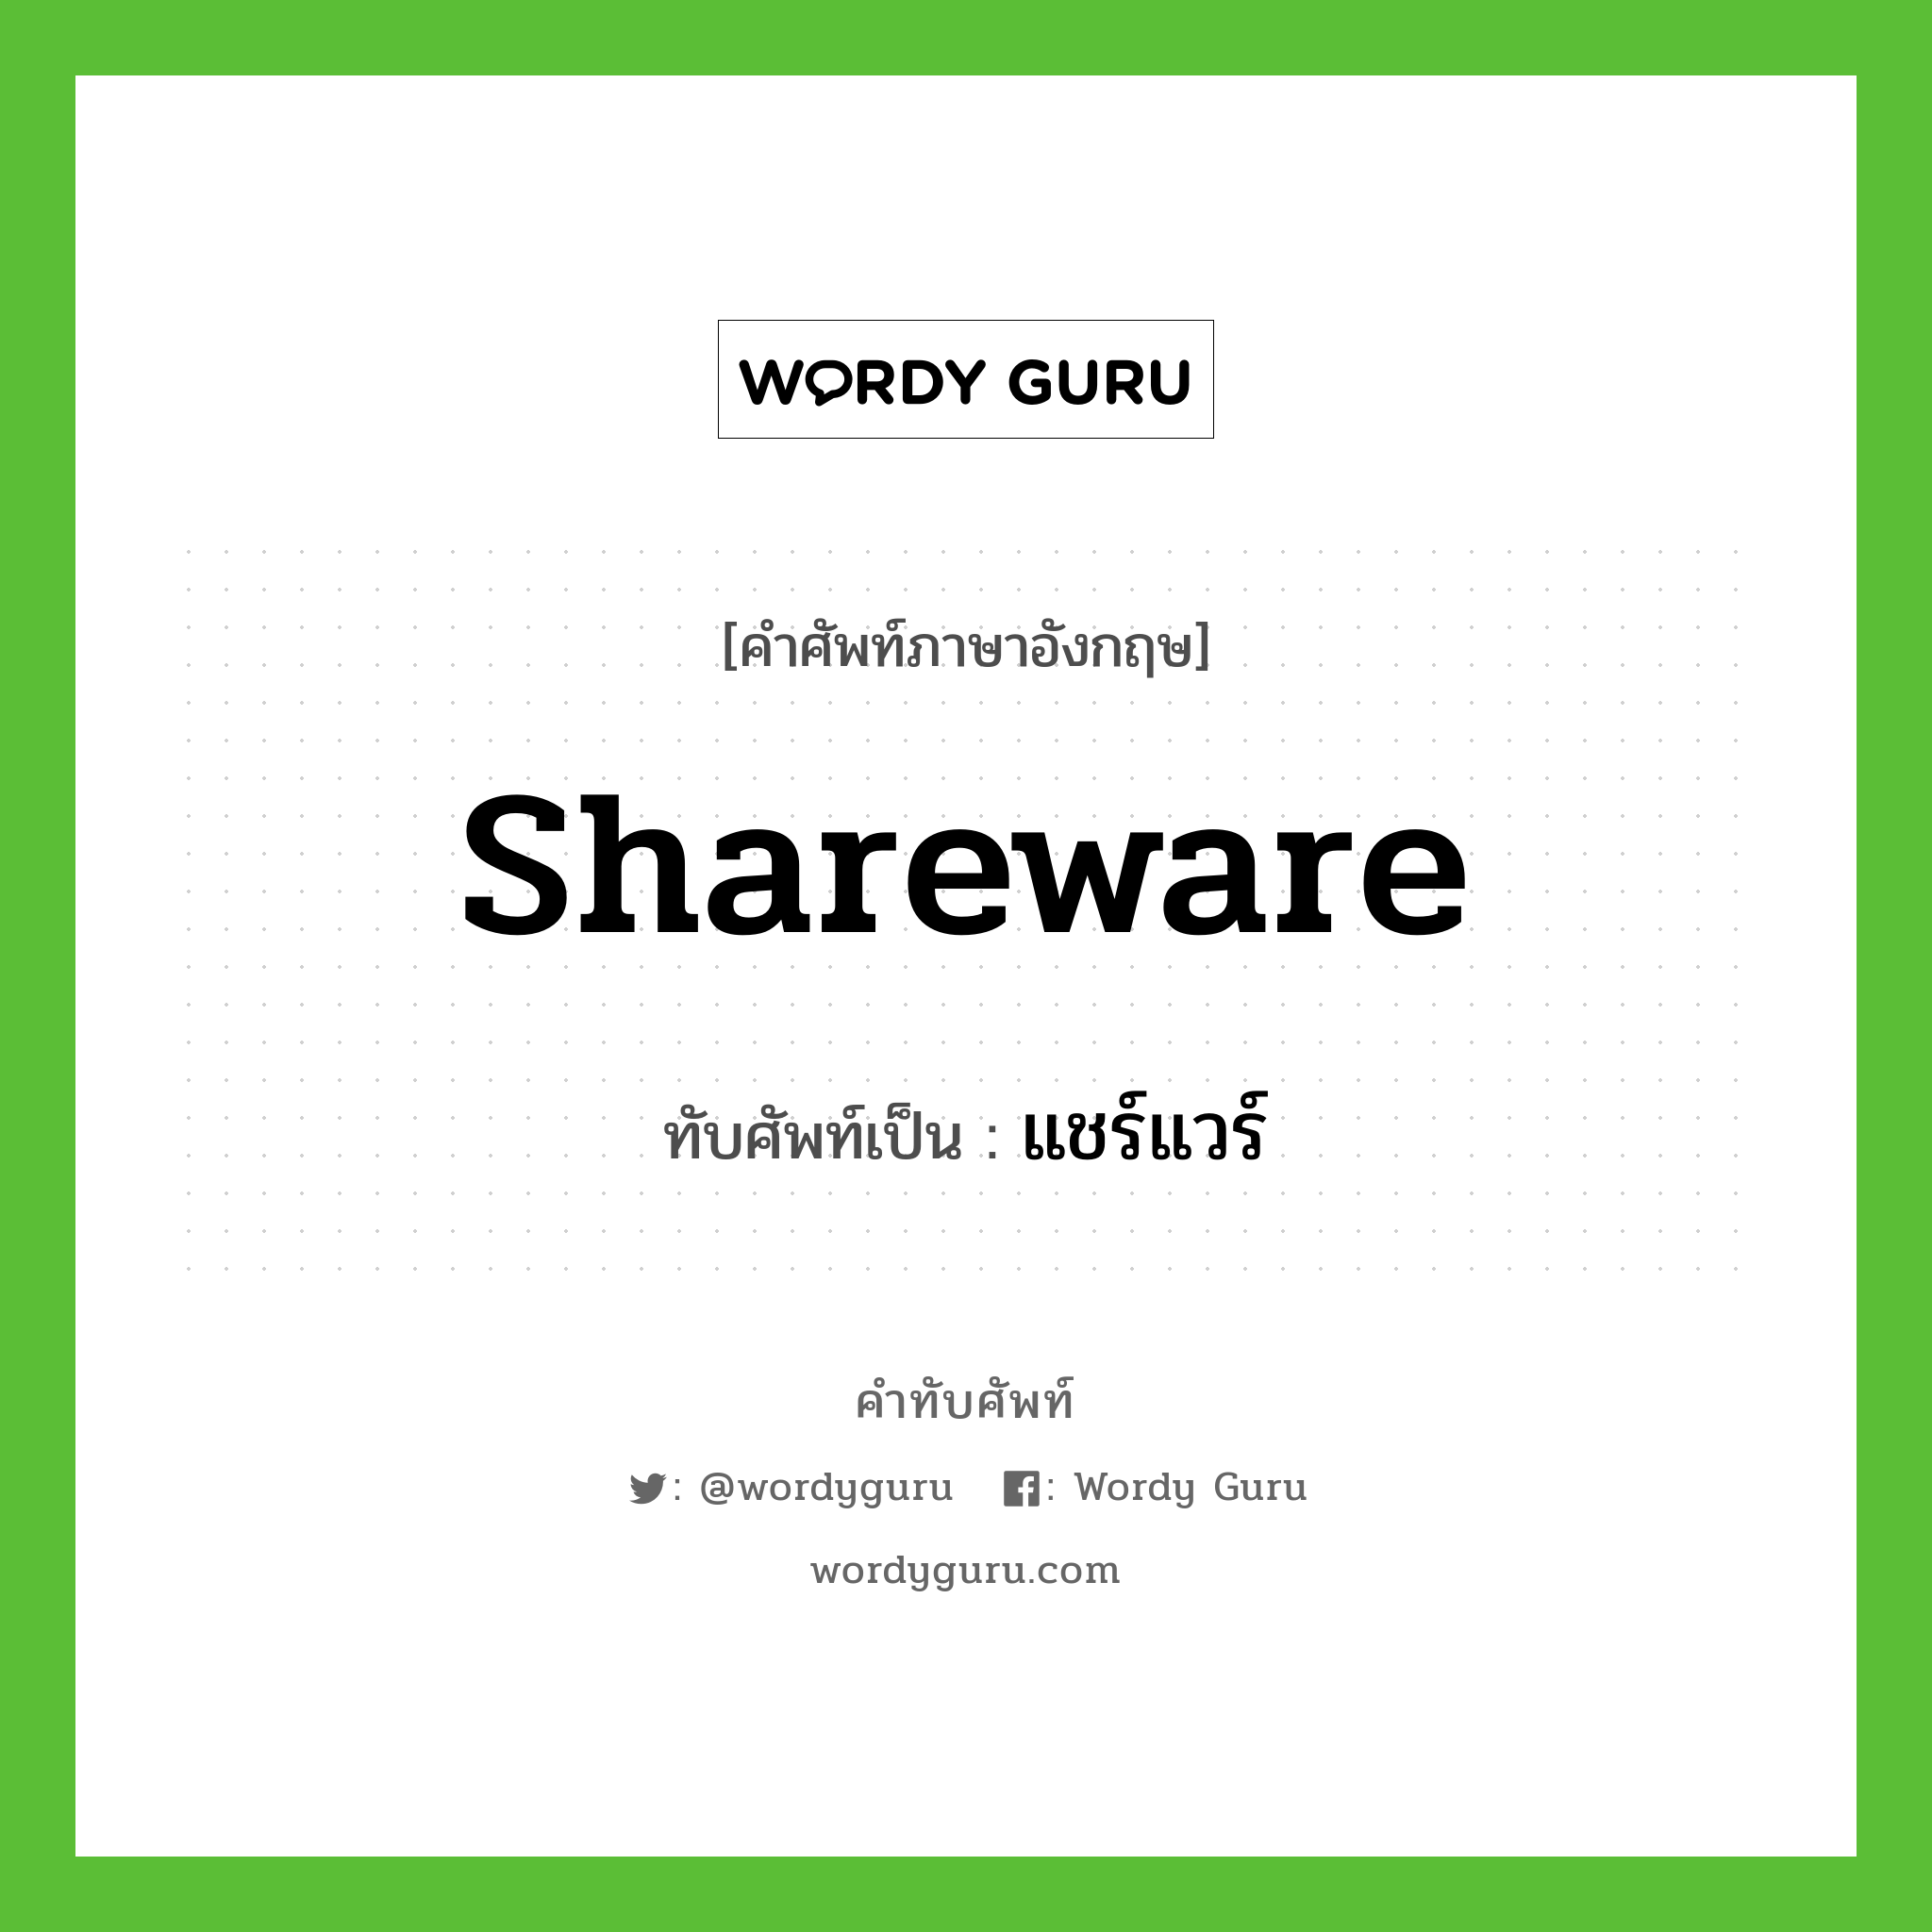 shareware เขียนเป็นคำไทยว่าอะไร?, คำศัพท์ภาษาอังกฤษ shareware ทับศัพท์เป็น แชร์แวร์